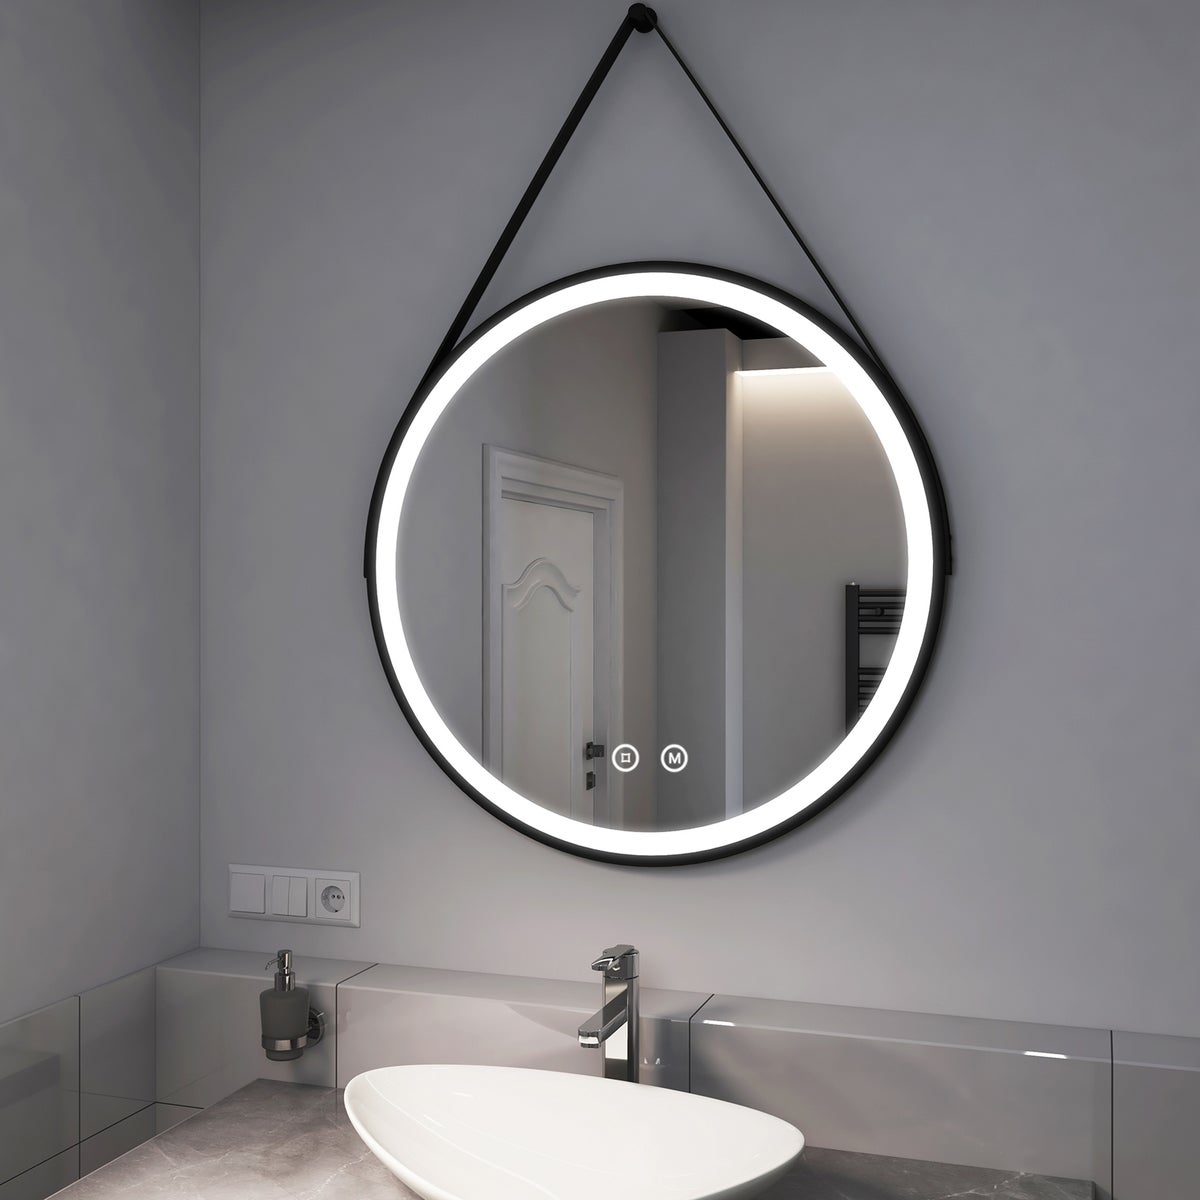 EMKE Badspiegel mit Beleuchtung Schwarz Rahmen und Riemen ф80cm, 3 Lichtfarben,Dimmbar